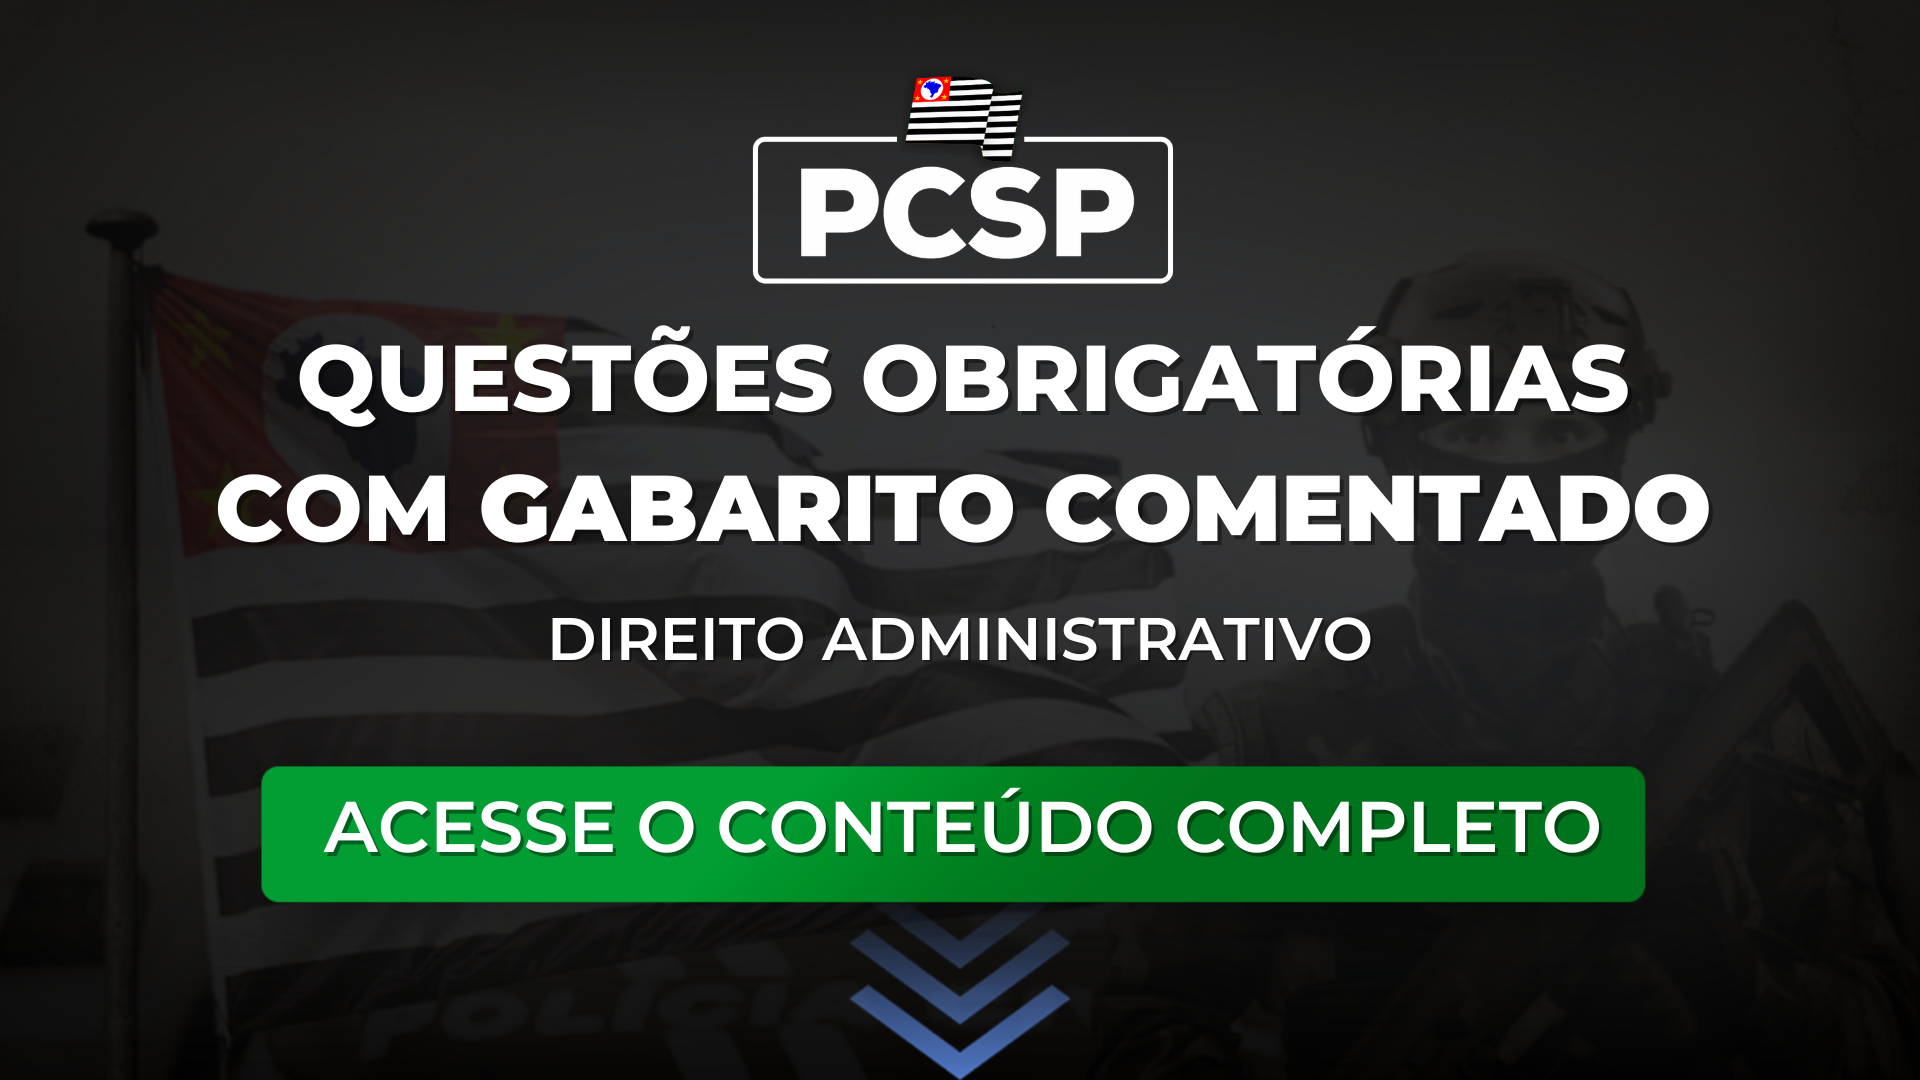 PCSP 23: Questões obrigatórias com gabarito comentado de Administrativo para o concurso